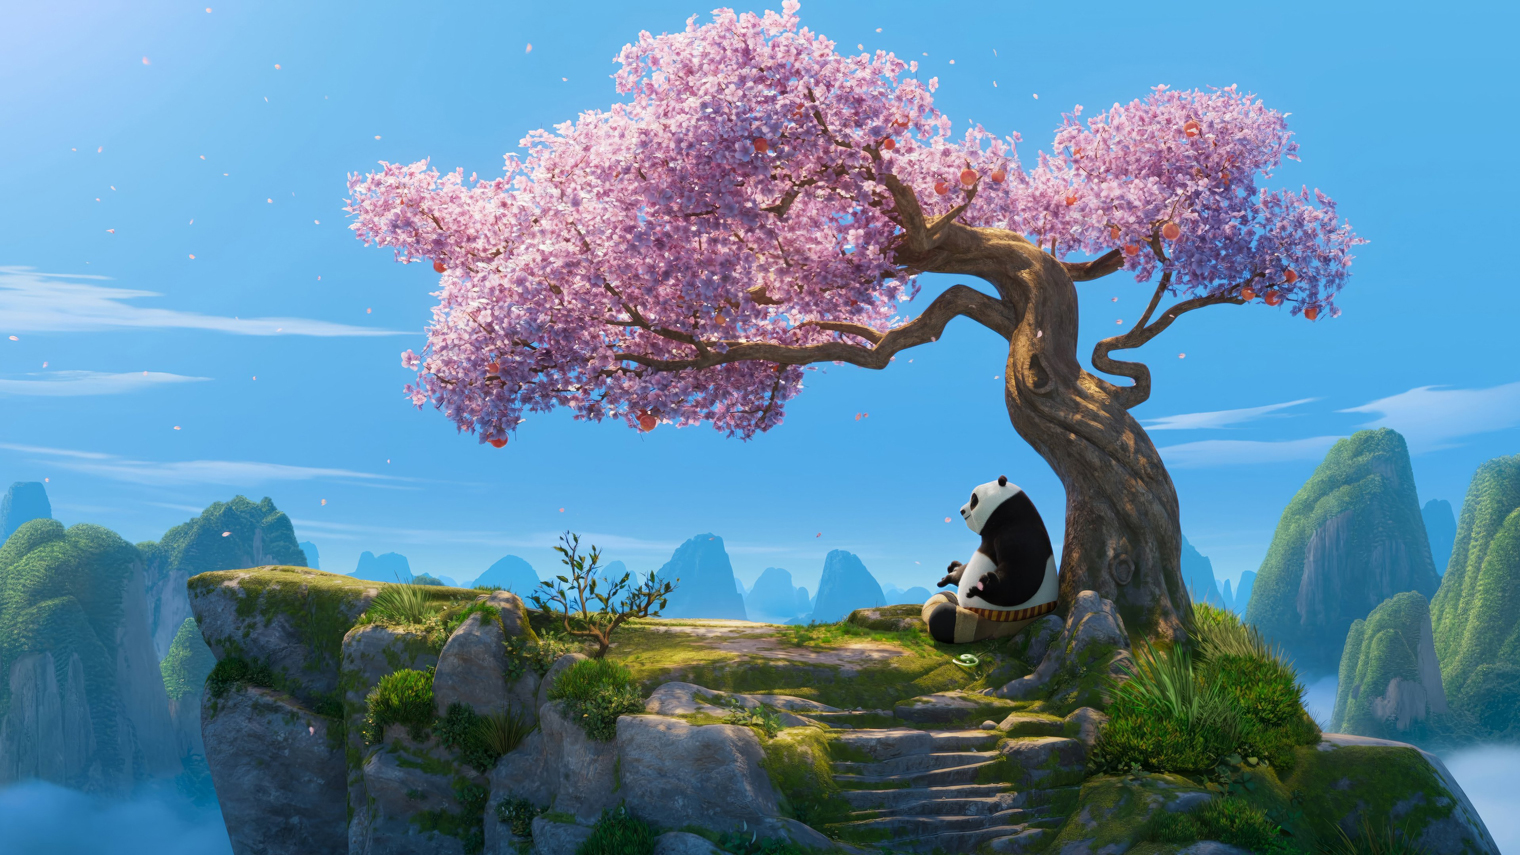 Ключевой локацией в мультфильме вновь становится гора с персиковым деревом. Там герой ищет ответы на внутренние вопросы и разговаривает с собой